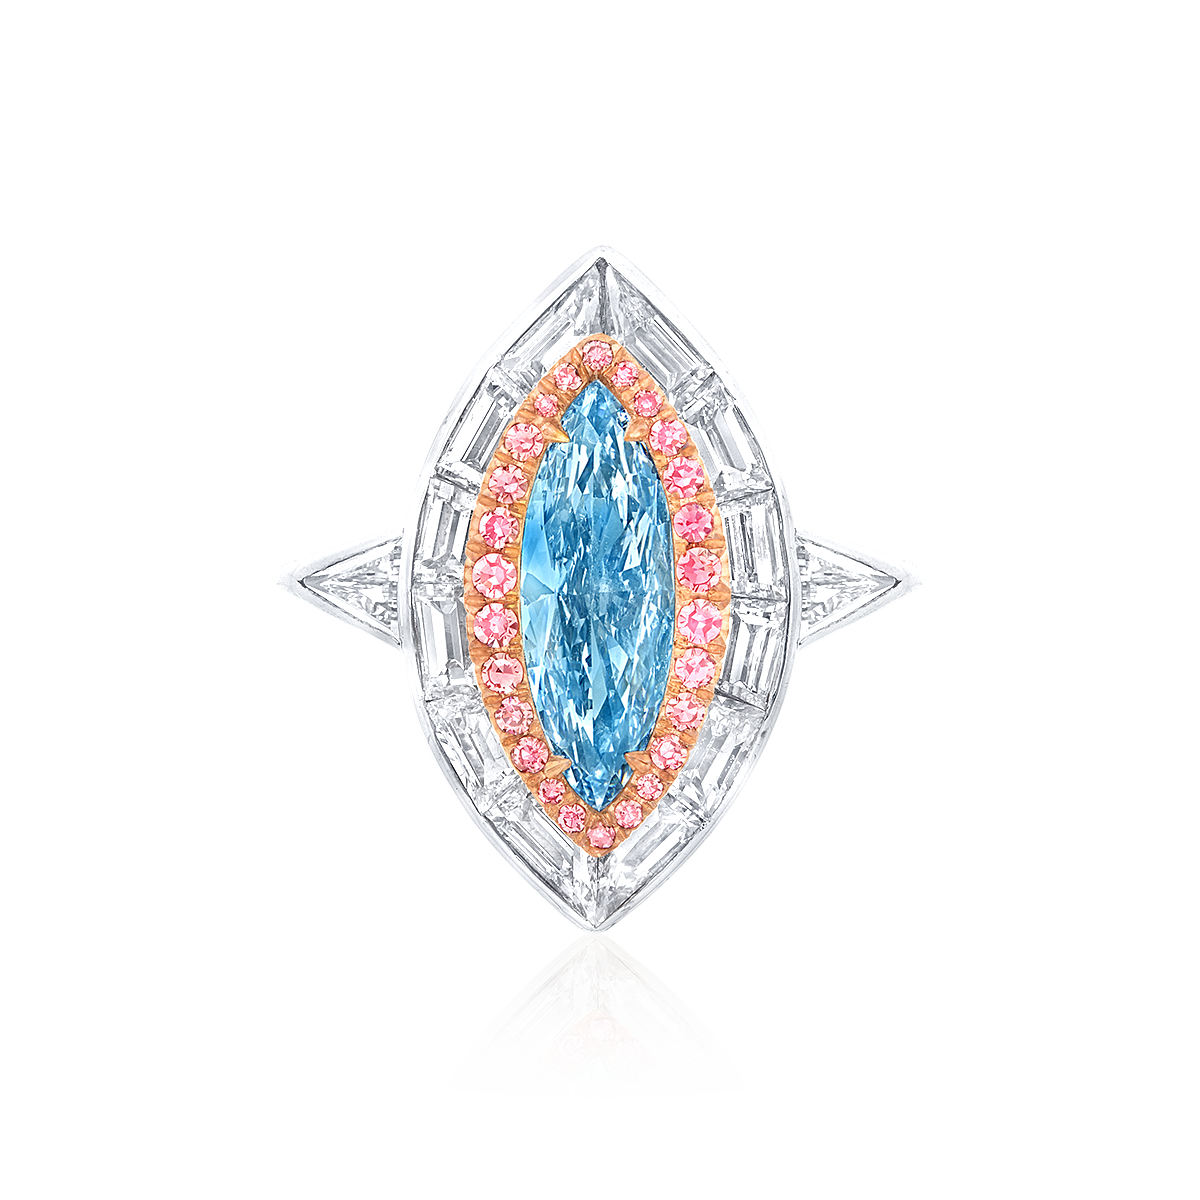 1.01克拉 天然無瑕濃彩藍鑽鑽戒
Impressive Internally Flawless 
Fancy Intense Blue Colored Diamond Ring